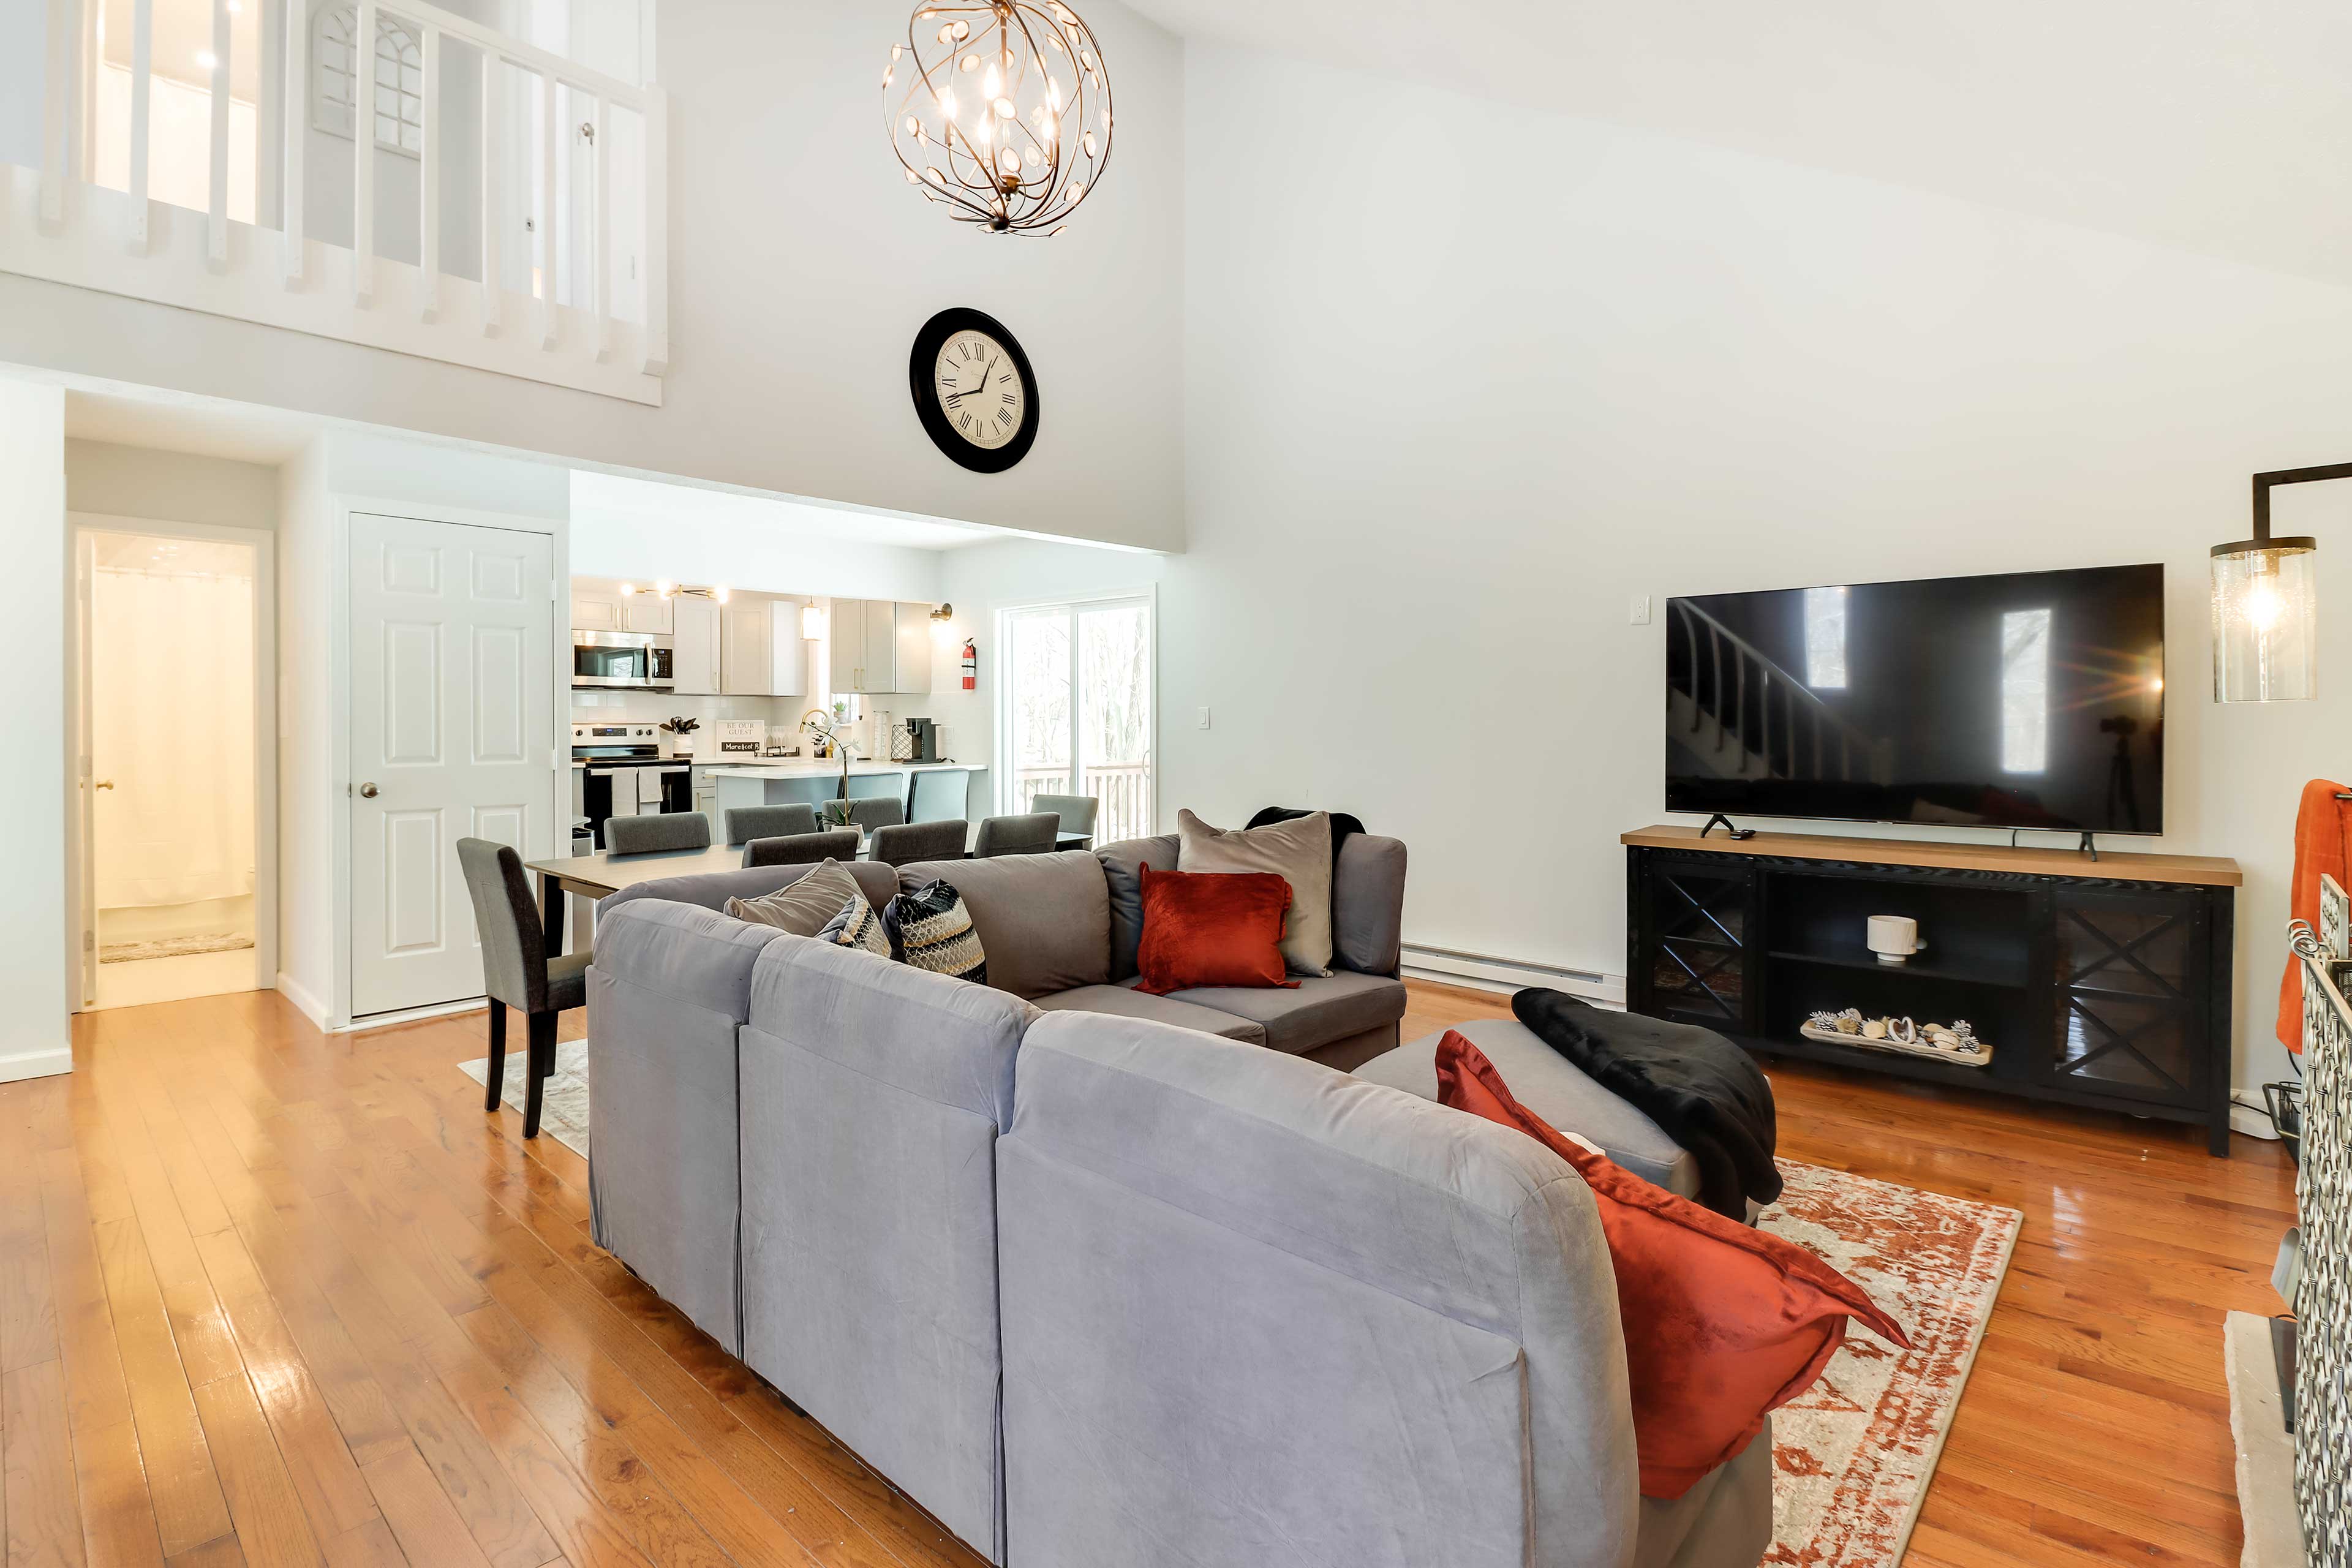 Living Room | Full Sleeper Sofa | Fireplace | Smart TVs